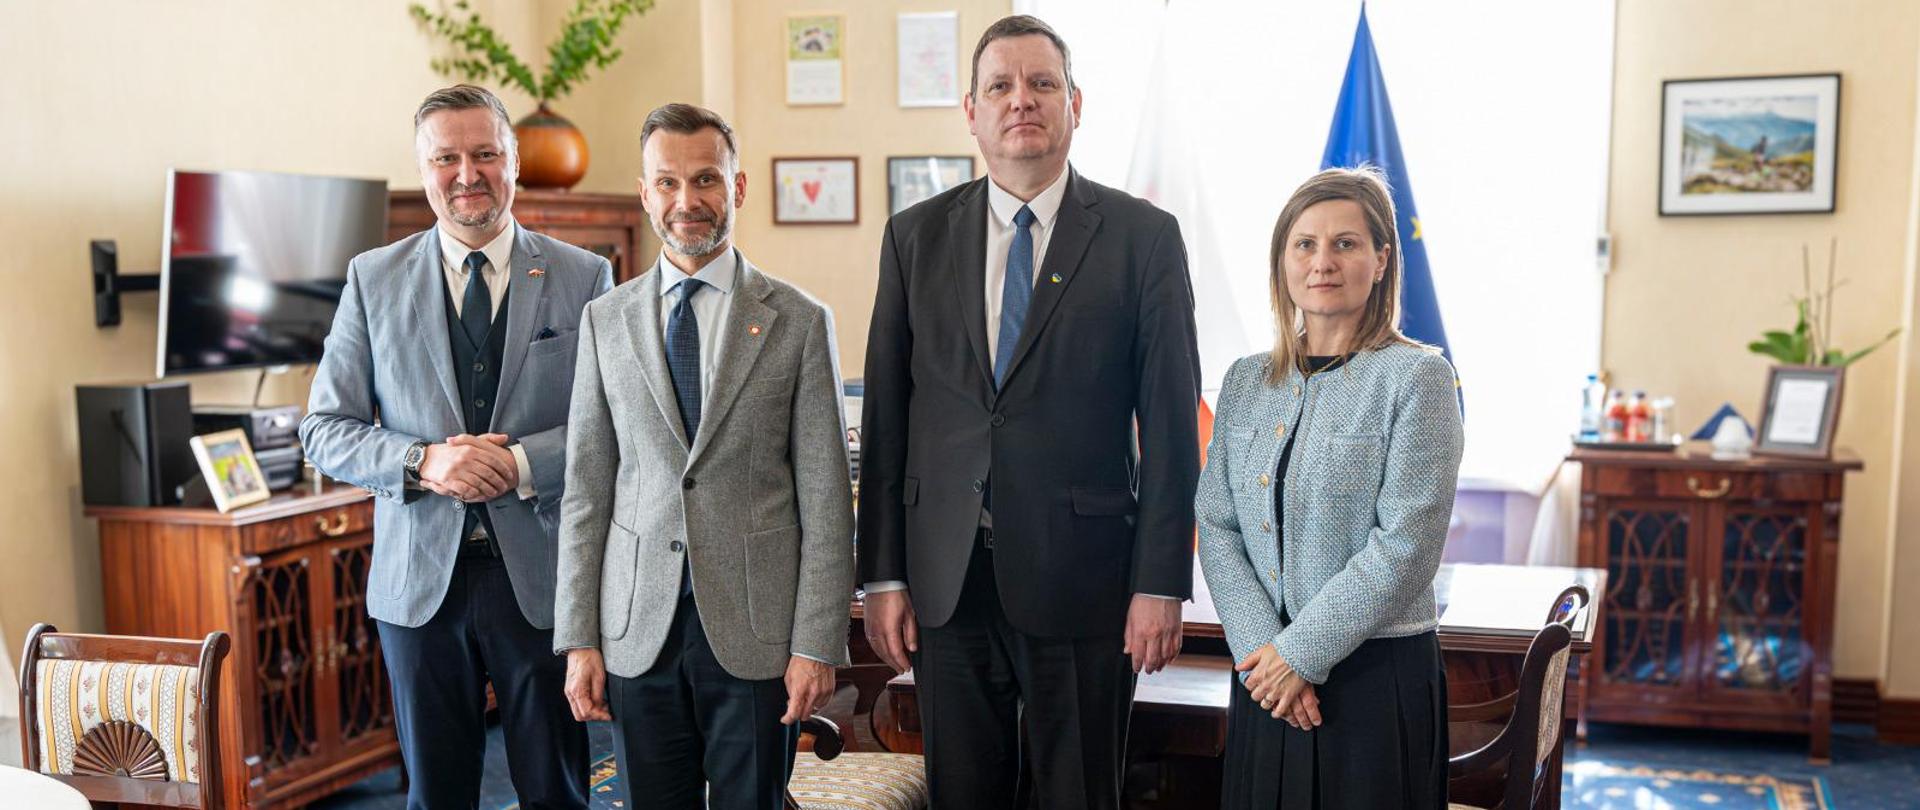 Spotkanie Wojewody z Ambasadorem Republiki Łotewskiej